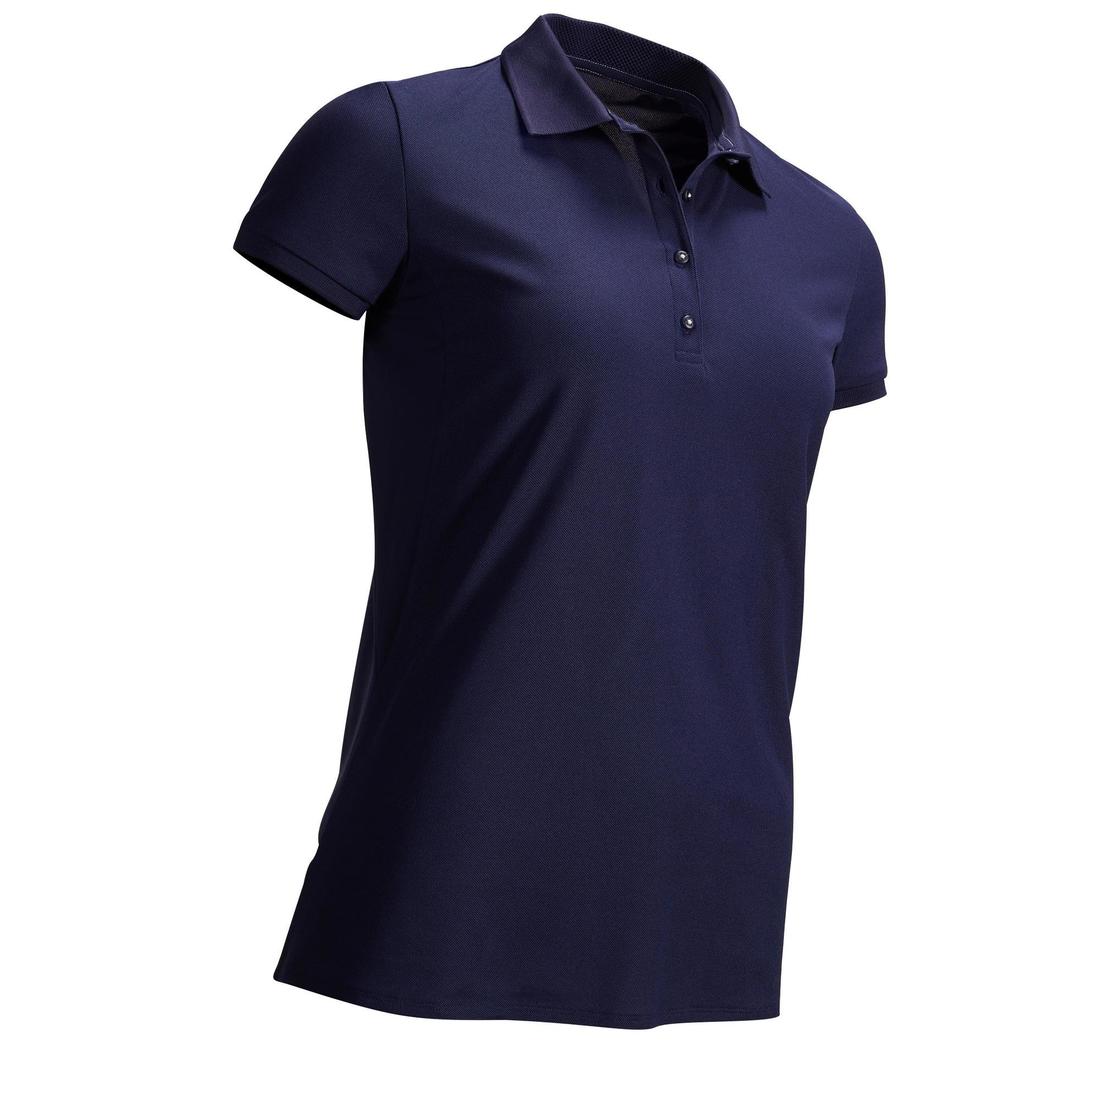 INESIS(イネシス) ゴルフ ポロシャツ 半袖 (穏やかな気候用) レディース